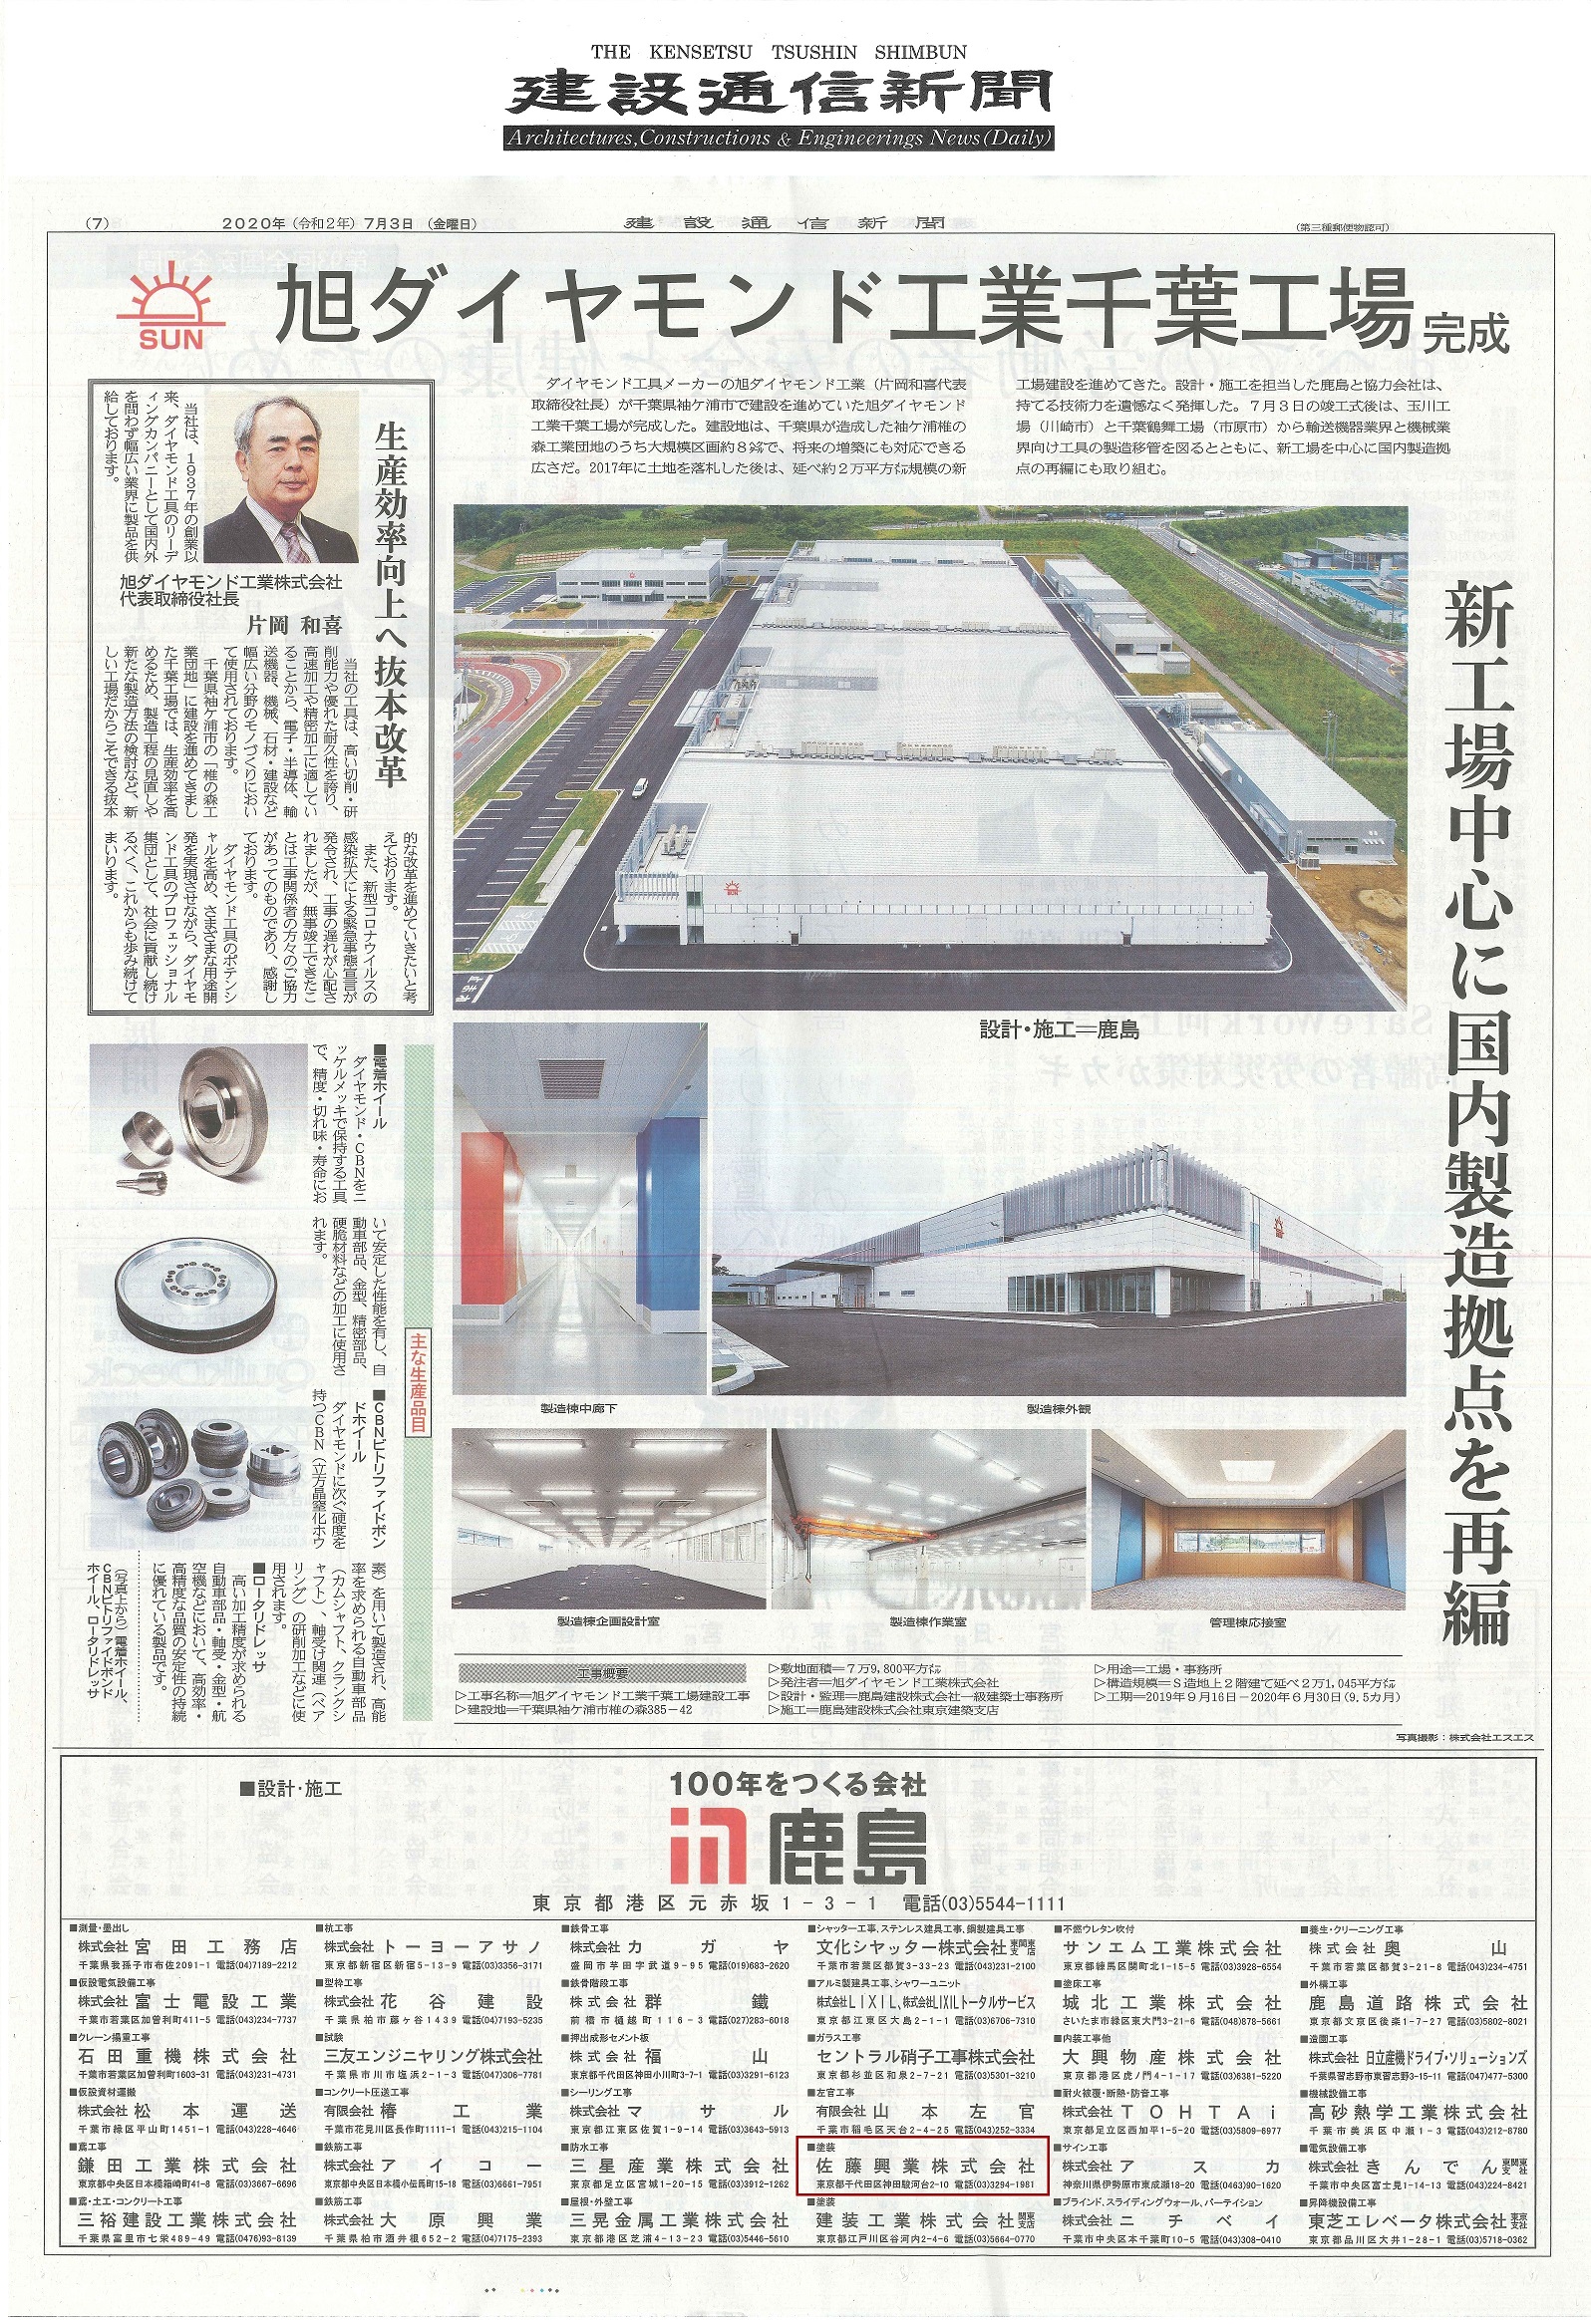 旭ダイヤモンド工業千葉工場の竣工広告が 『建設通信新聞』に掲載